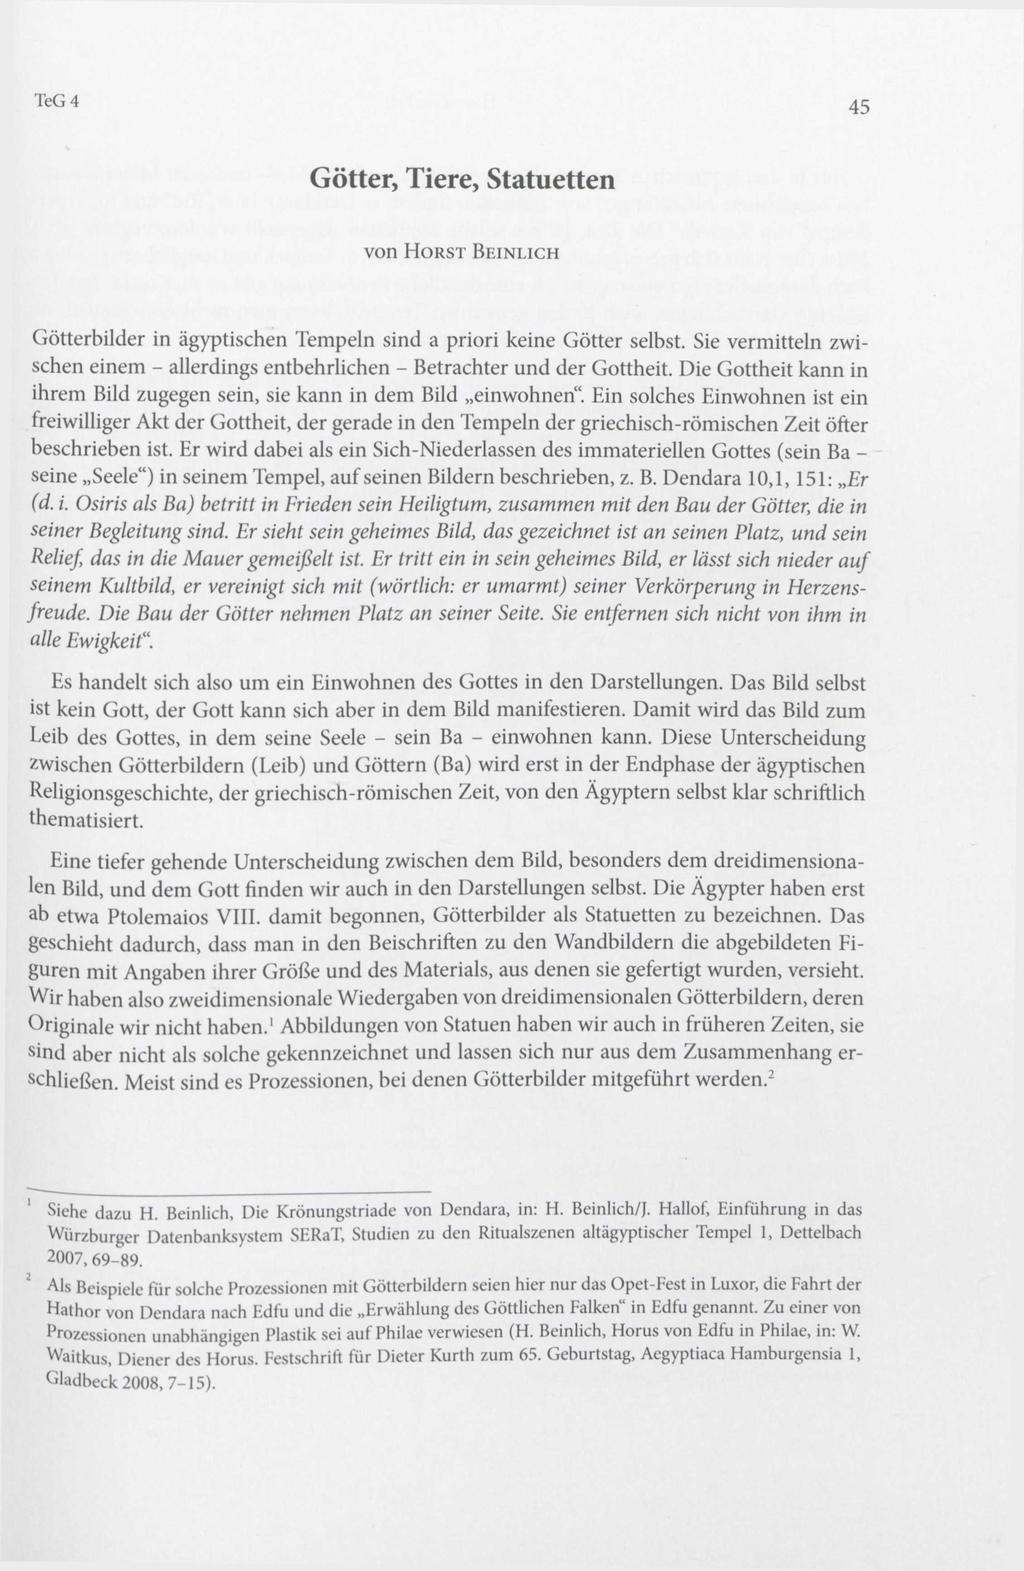 Originalveröffentlichung in: Mélanie C. Floßmann-Schütze (Hrsg.), Kleine Götter große Götter. Festschrift für Dieter Kessler zum 65. Geburtstag (Tuna el-gebel 4), Vaterstetten 2013, S.